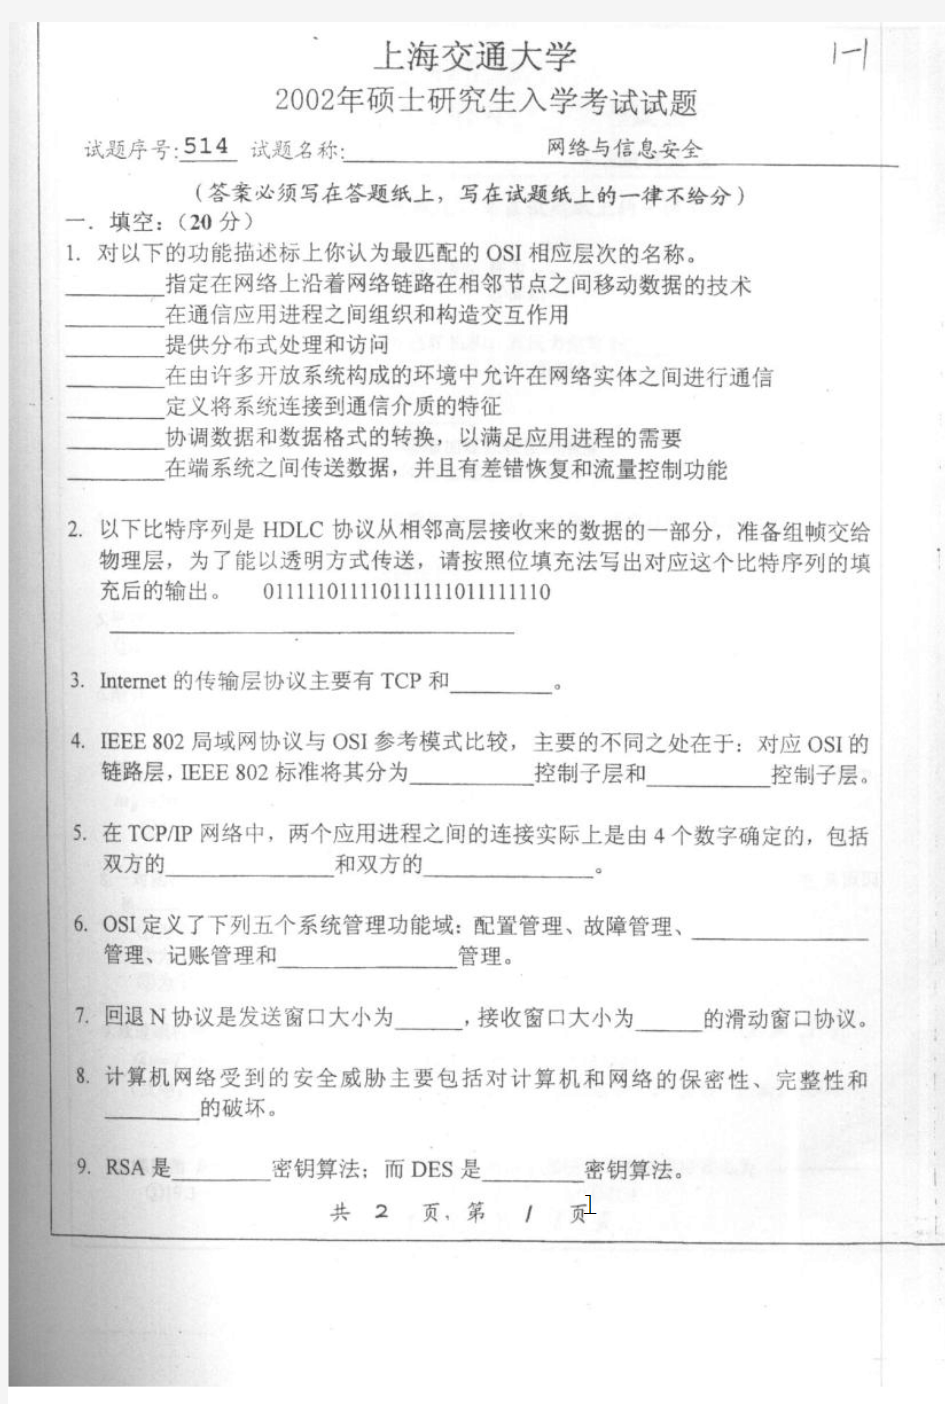 上海交通大学_网络与信息安全_2002年_考研真题